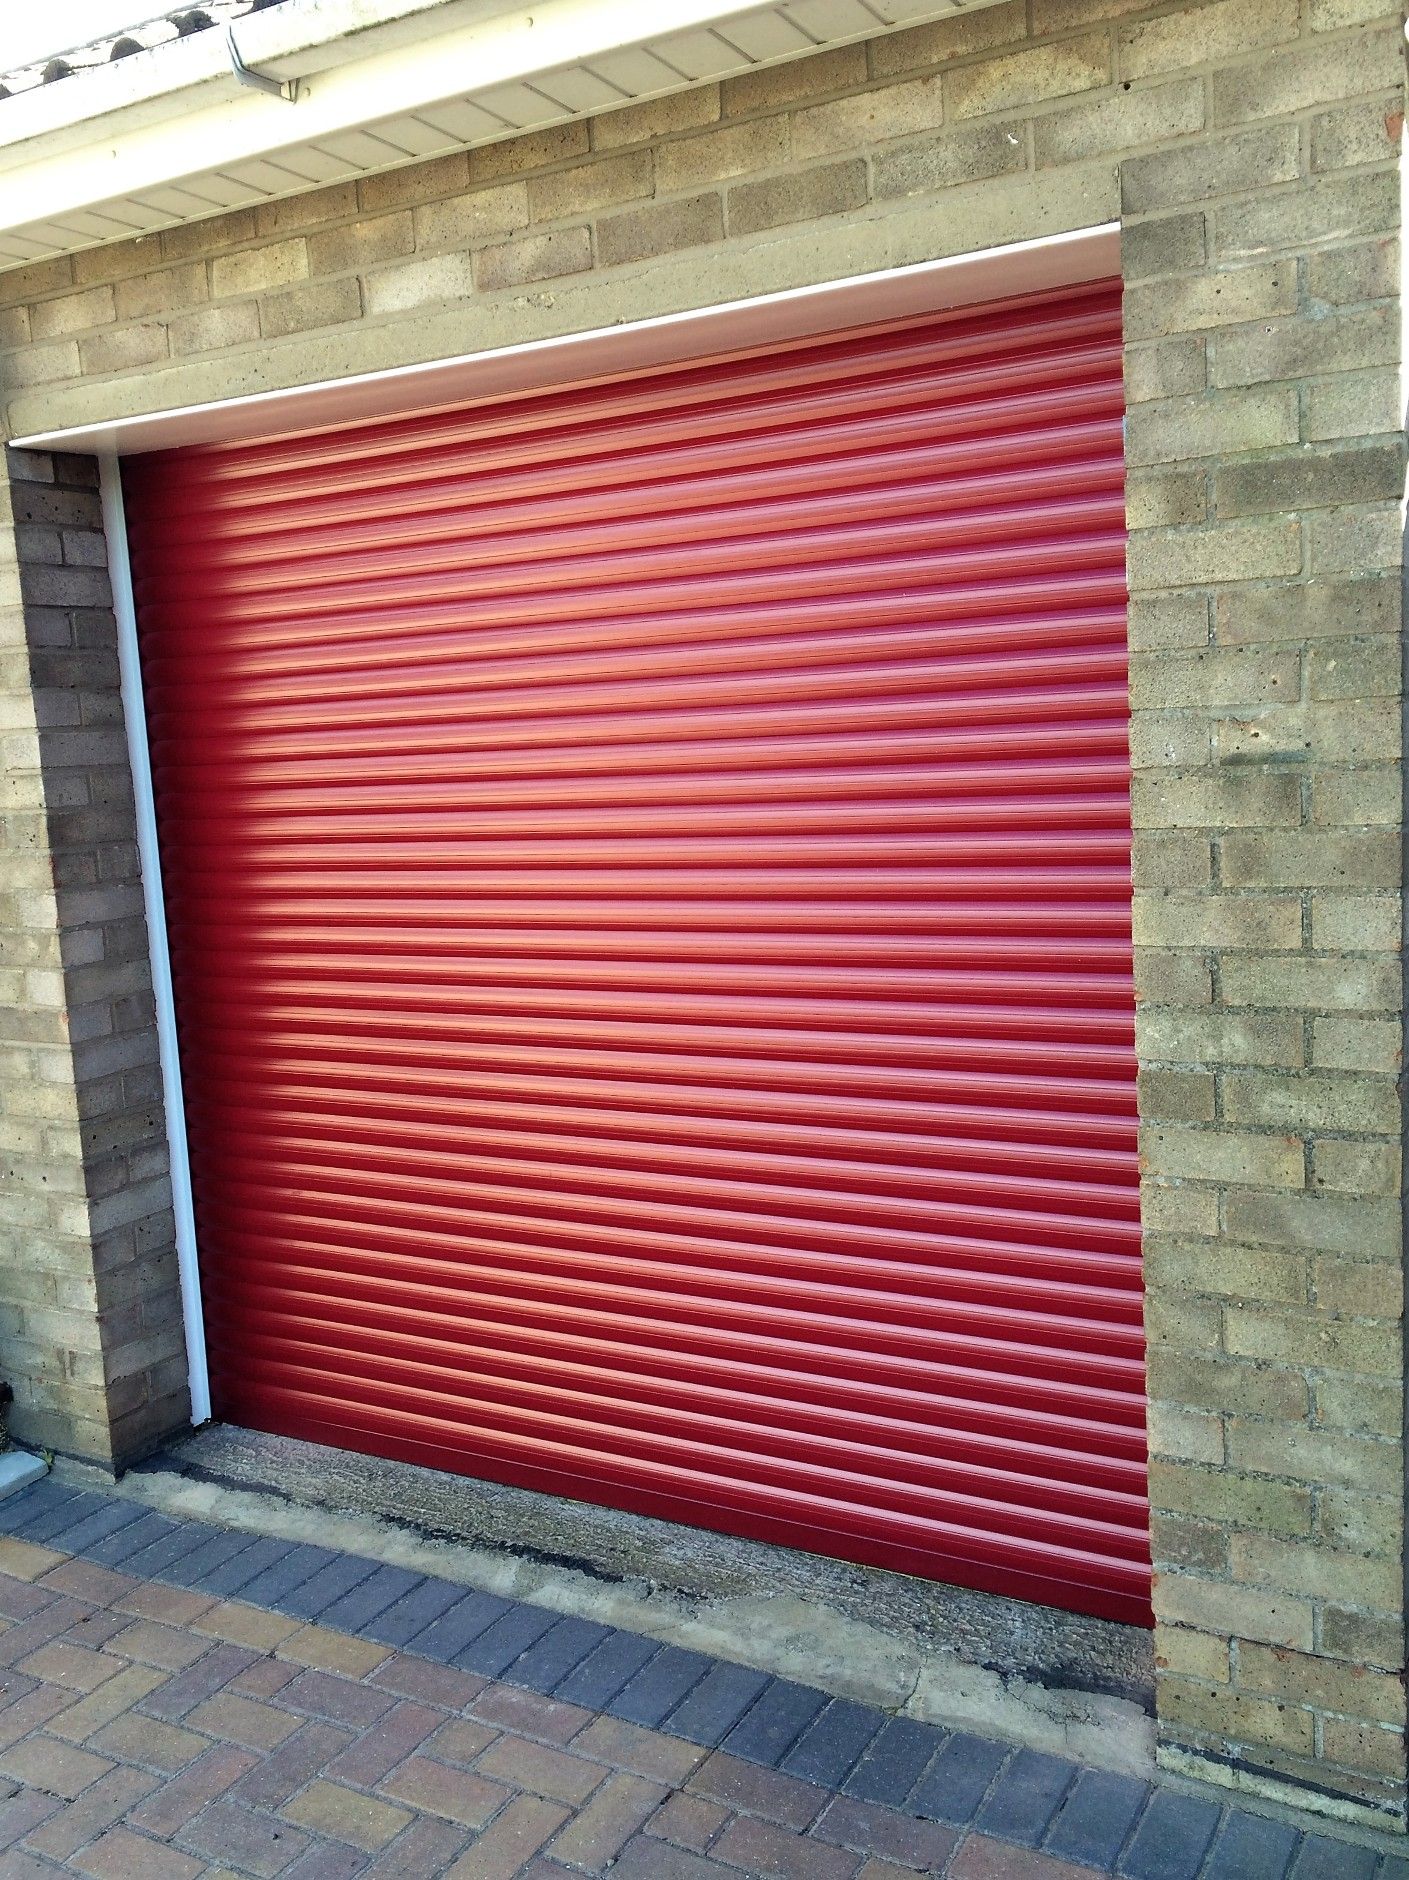 A red garage door